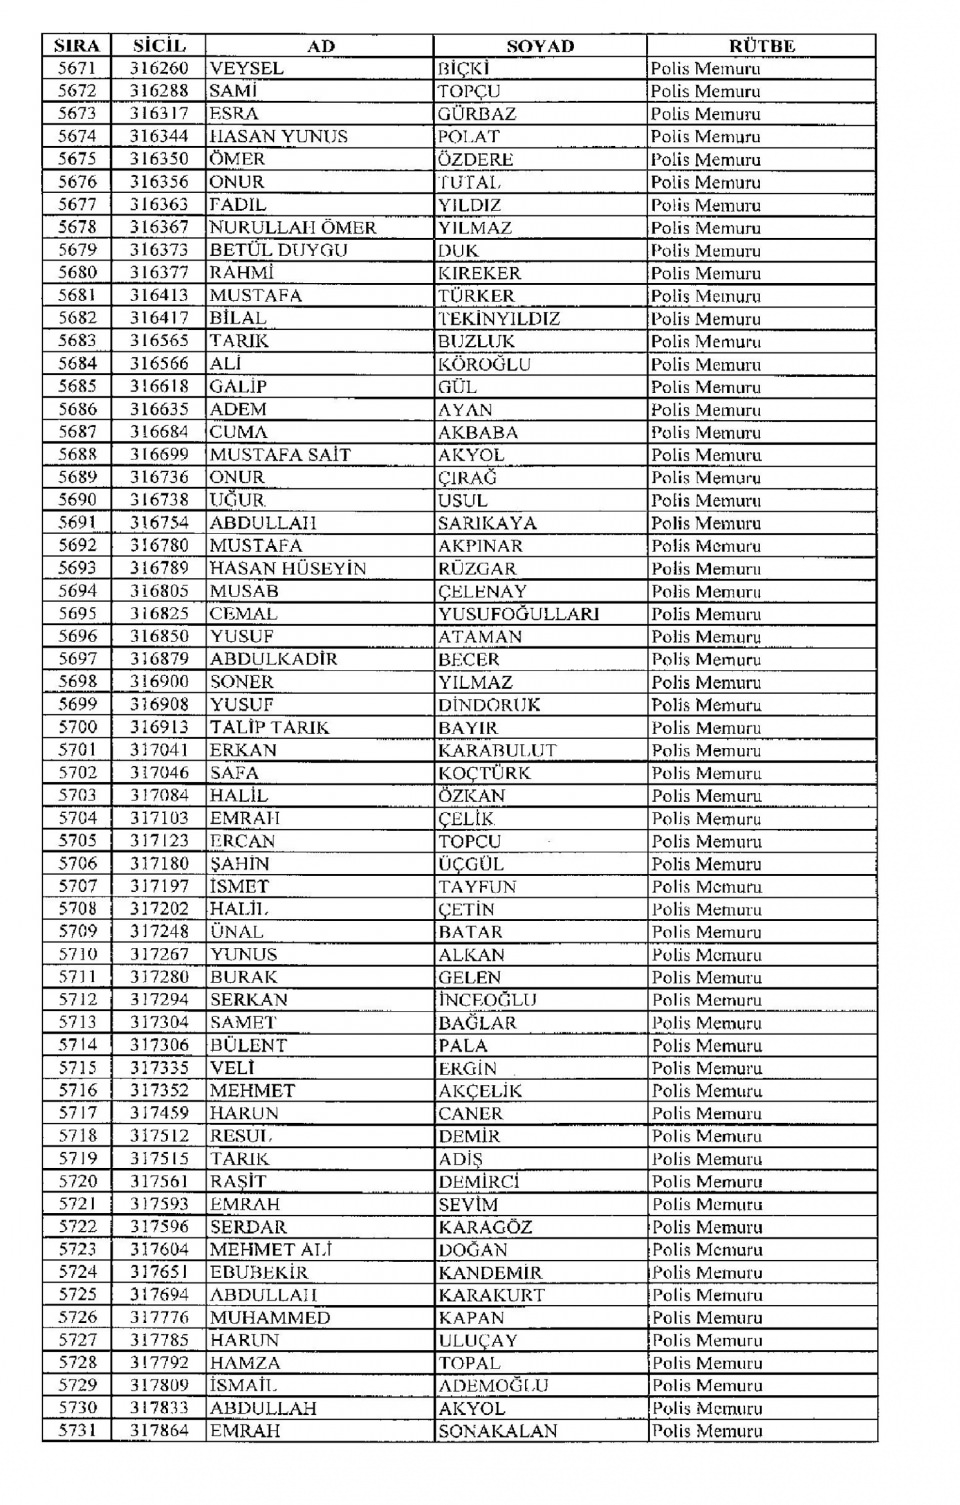 Kamudan ihraç edilenlerin isimleri 152